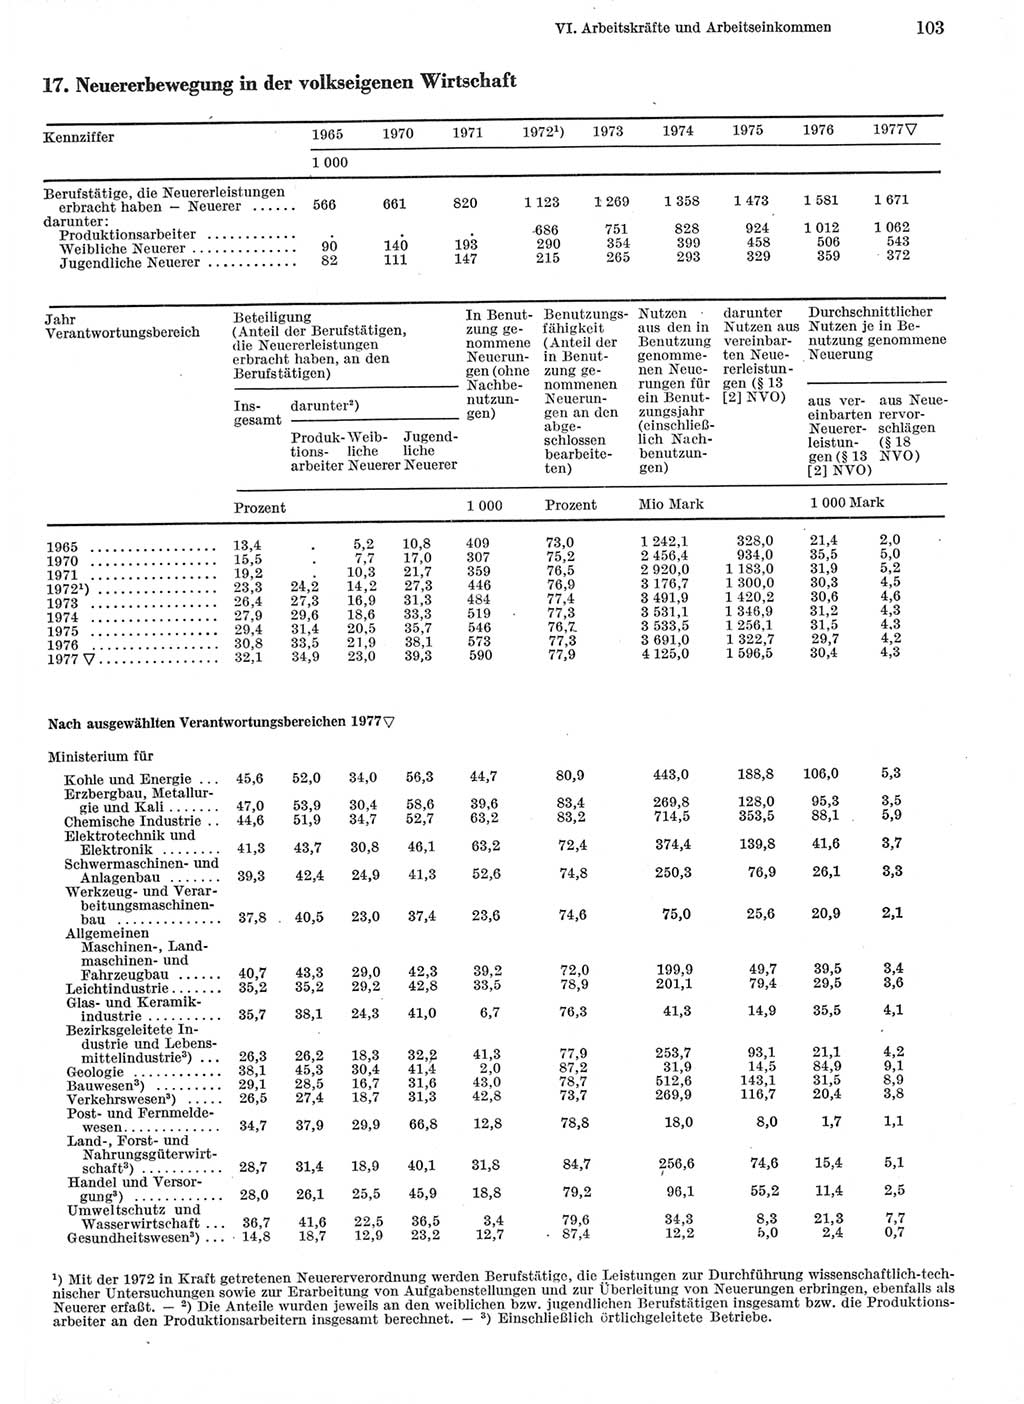 Statistisches Jahrbuch der Deutschen Demokratischen Republik (DDR) 1978, Seite 103 (Stat. Jb. DDR 1978, S. 103)